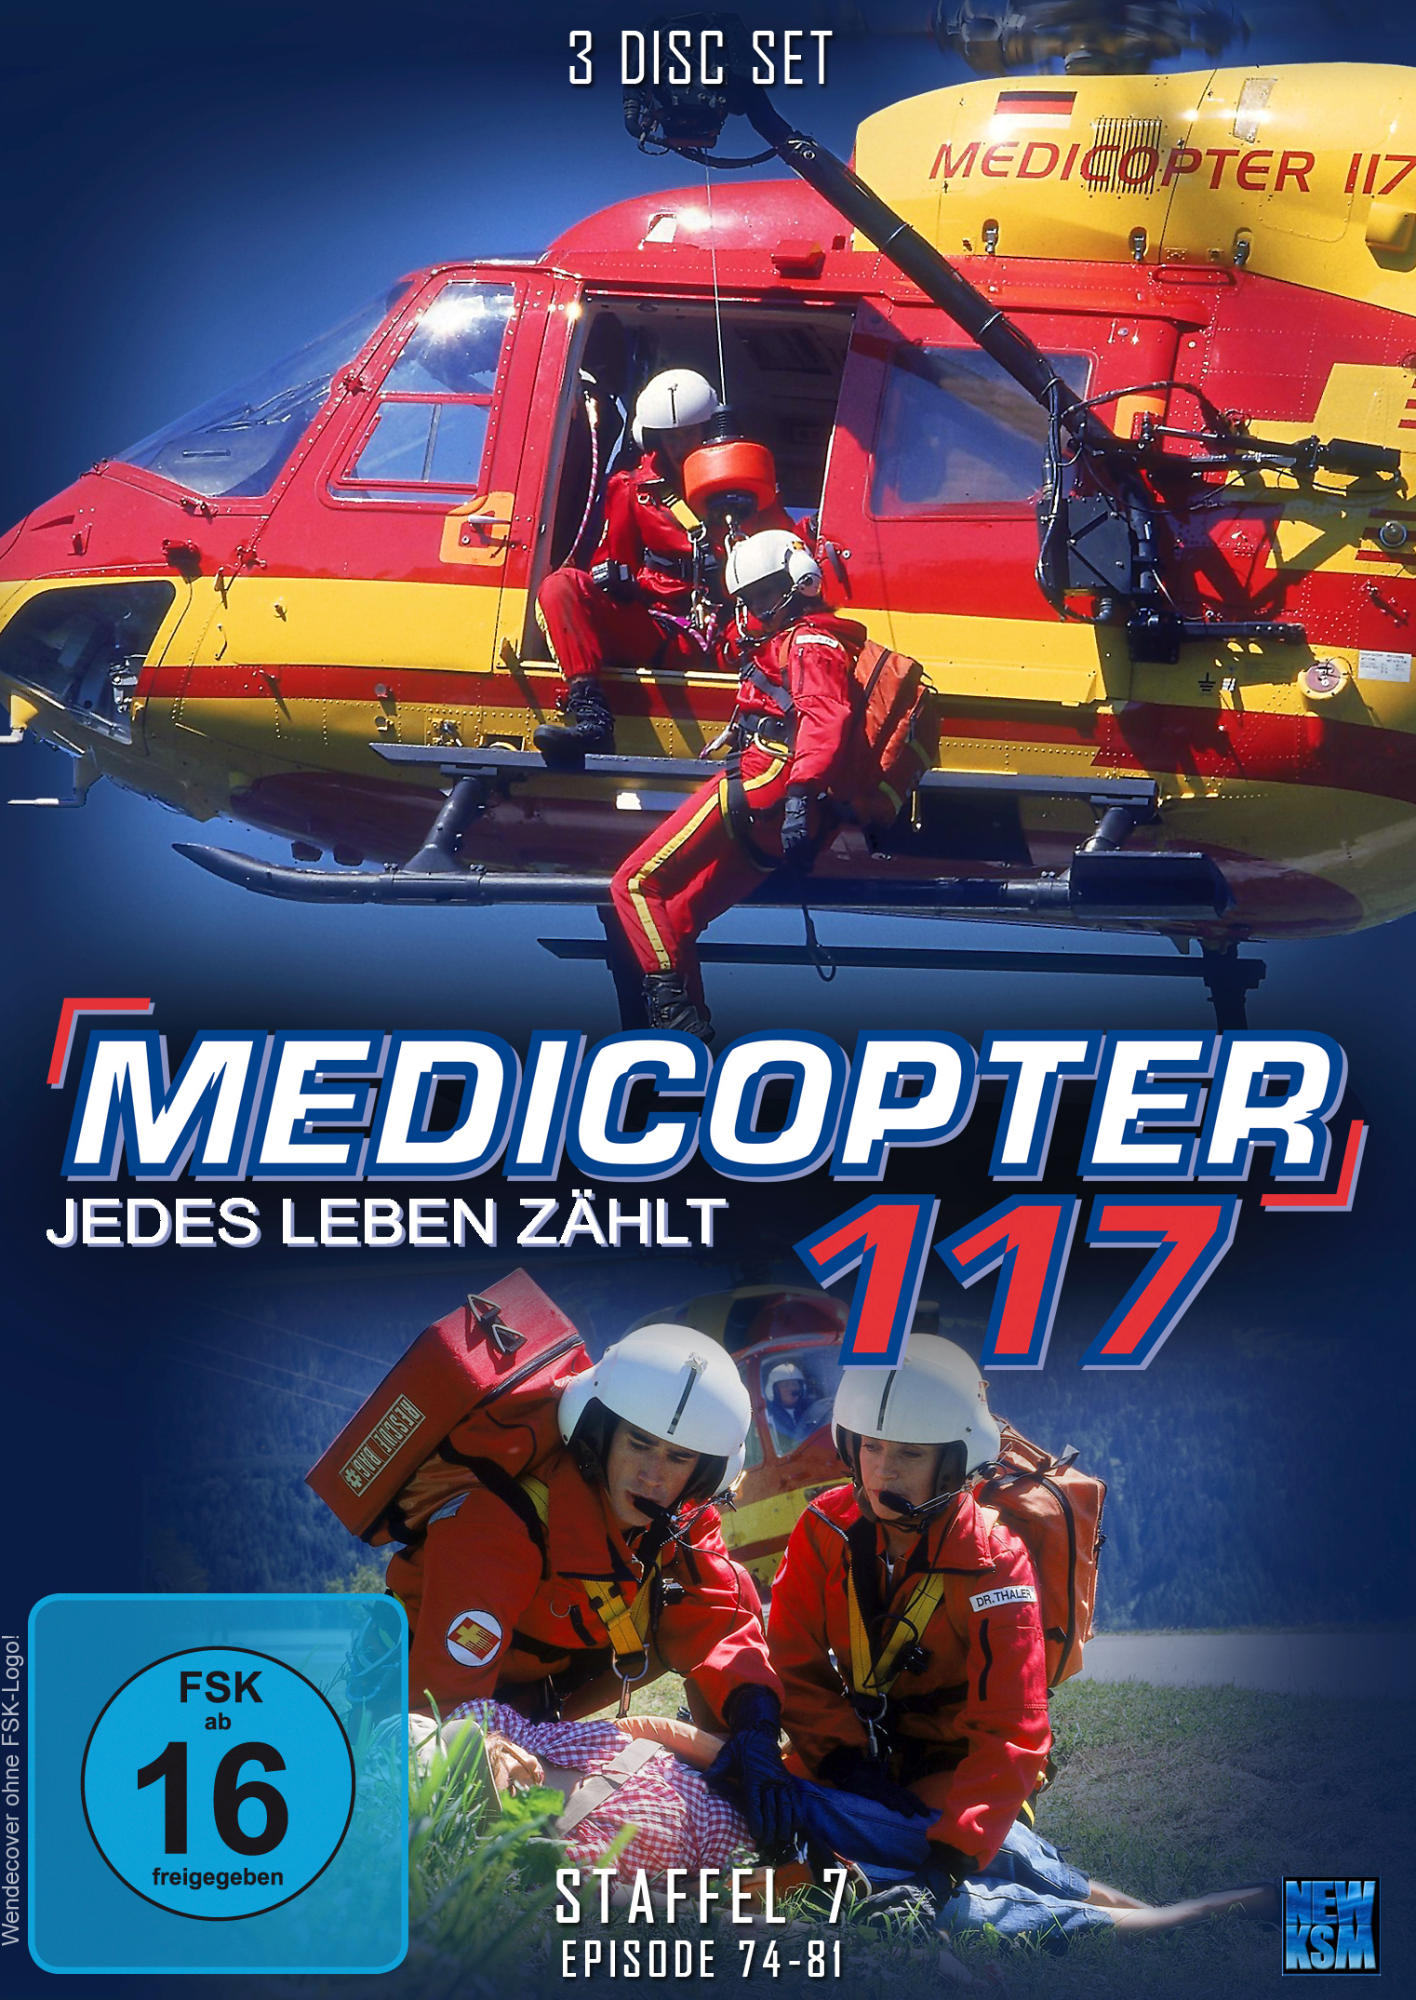 7 DVD - Medicopter Staffel 117